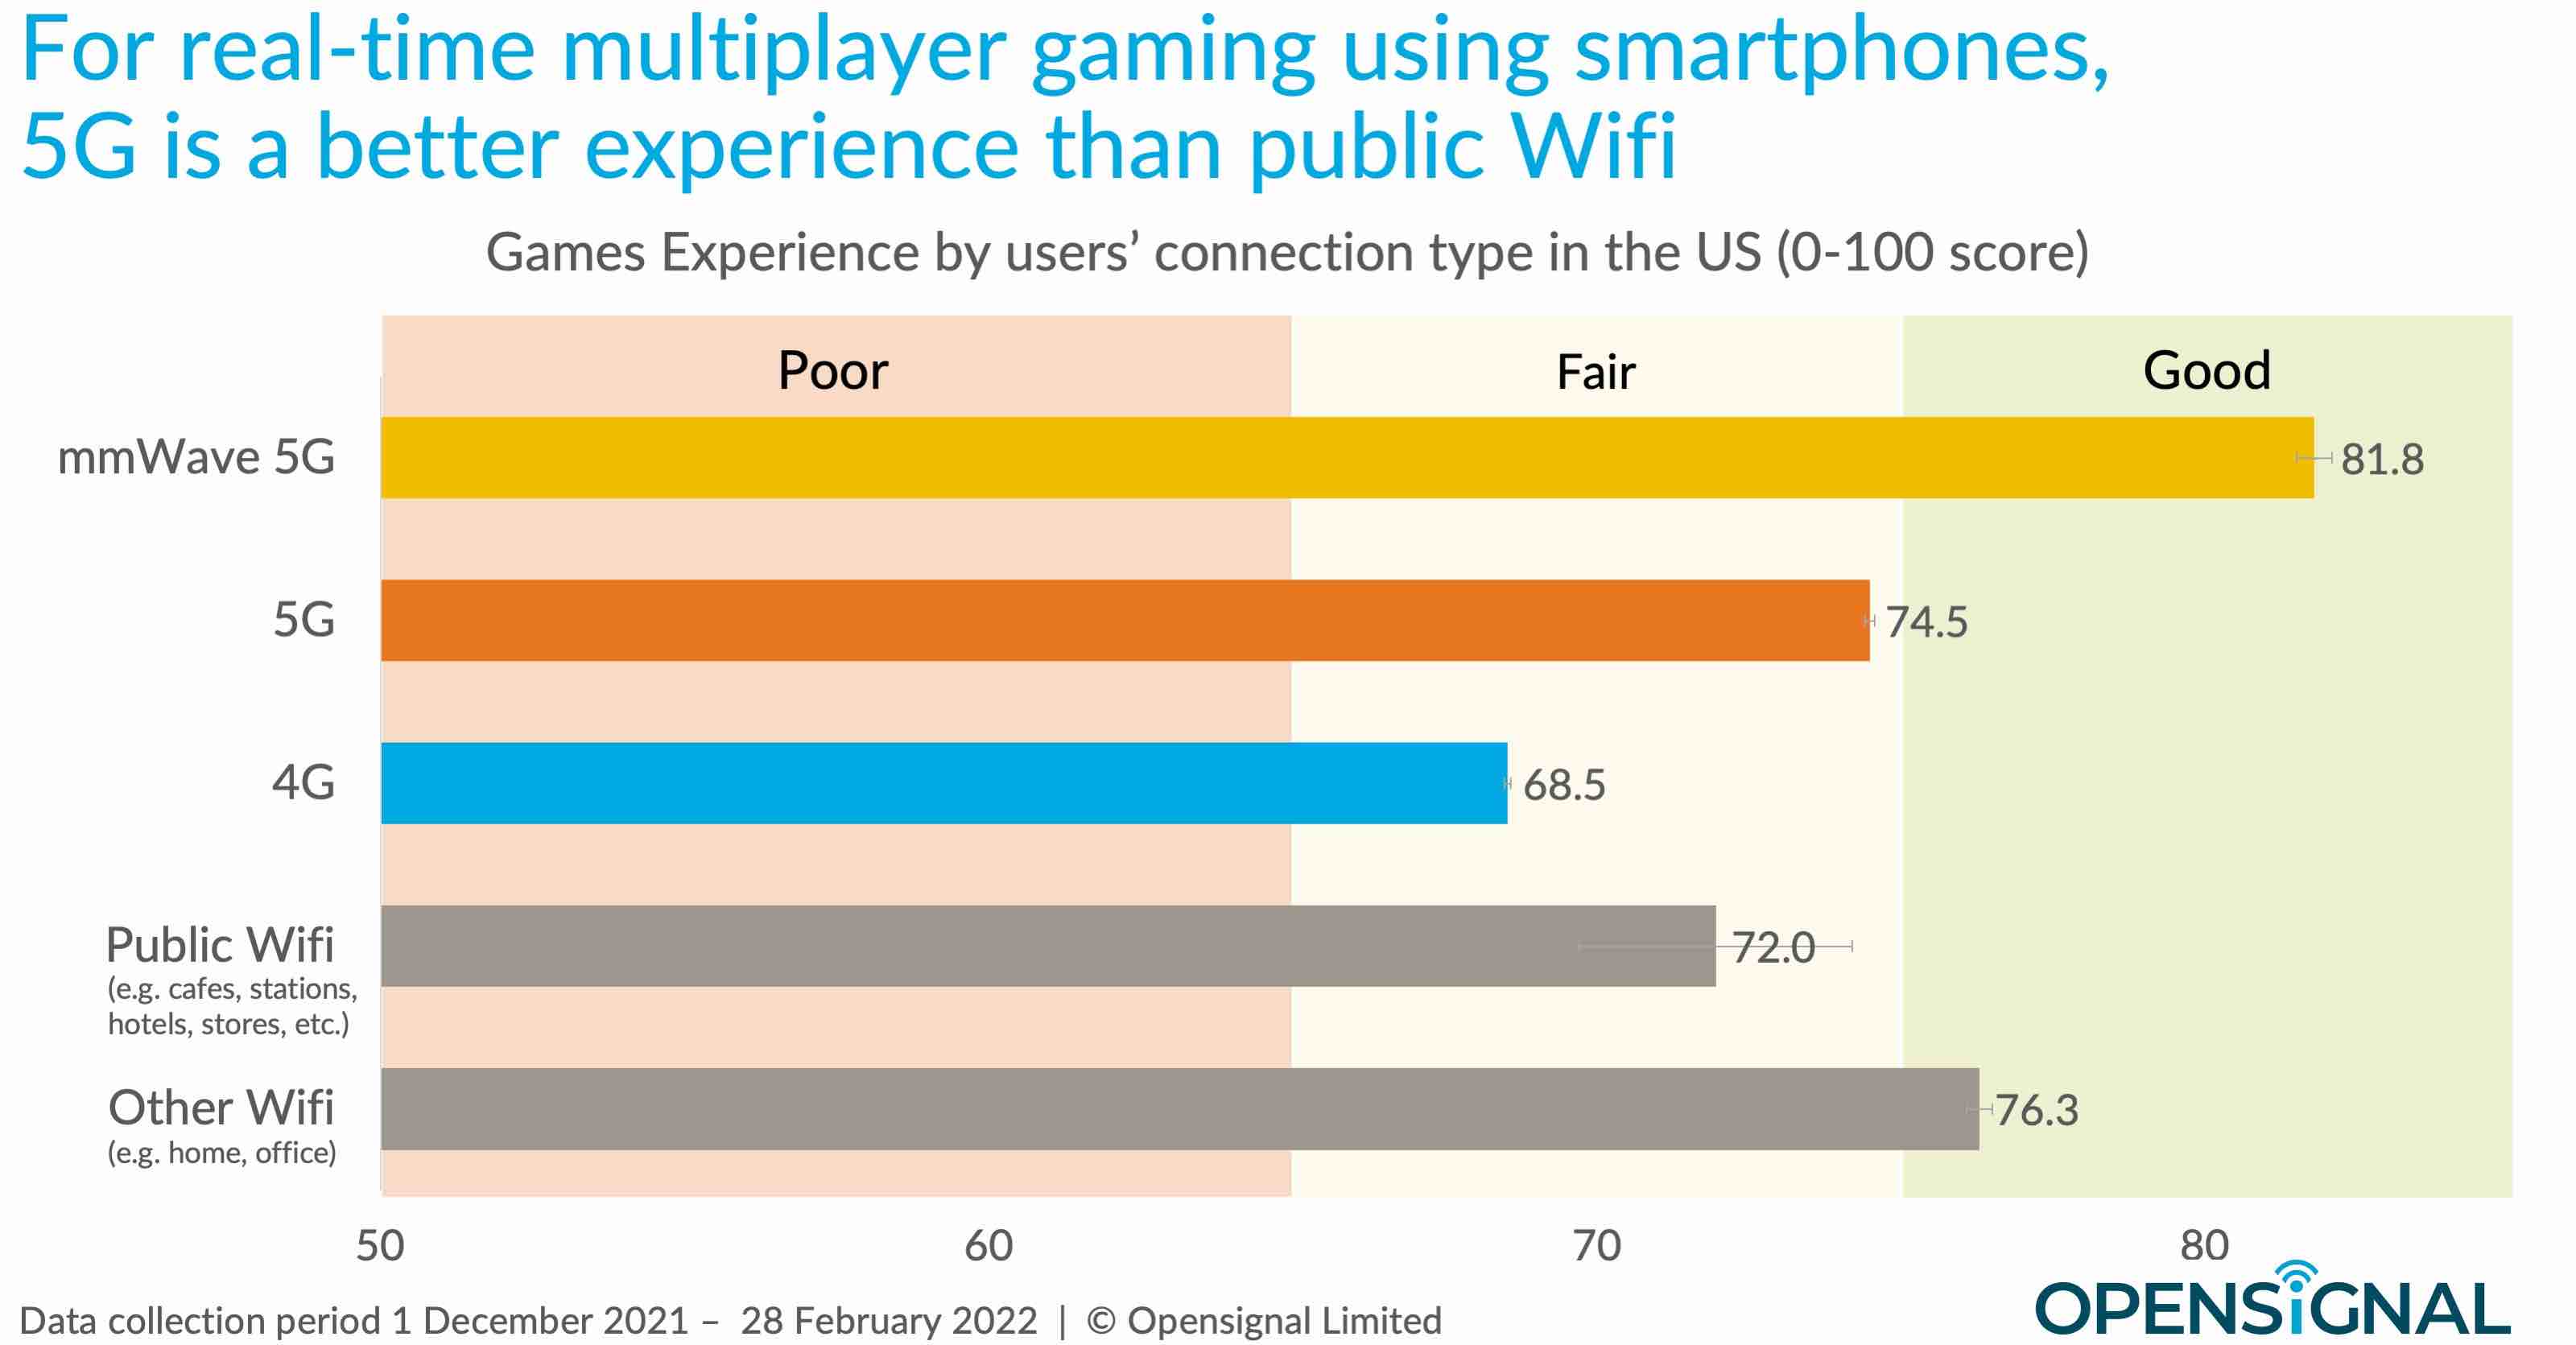 5G vs public wifi gaming